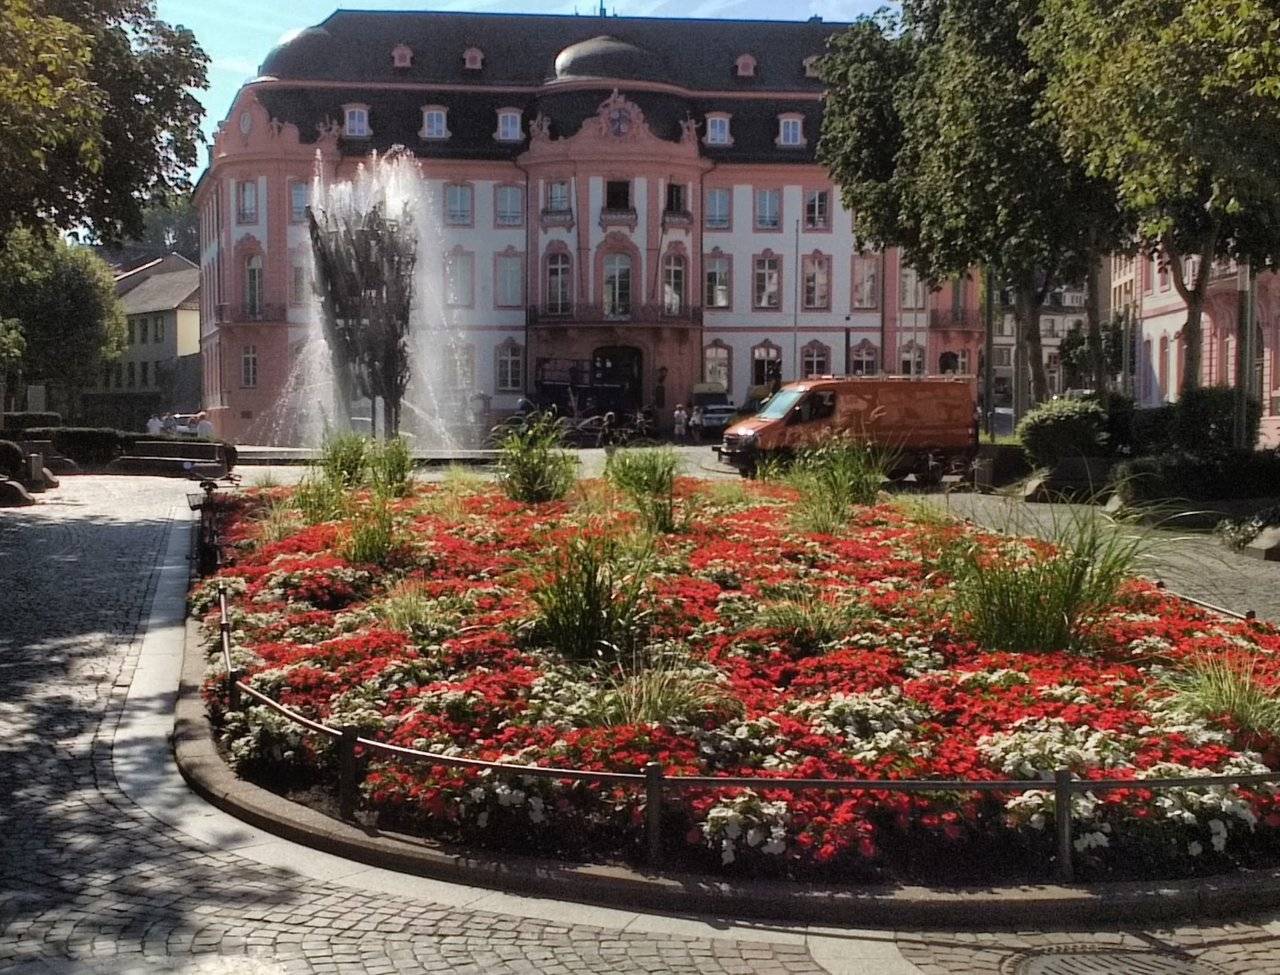 Osteiner Hof (Courtyard) with Fastnacht fountain and garden in foreground